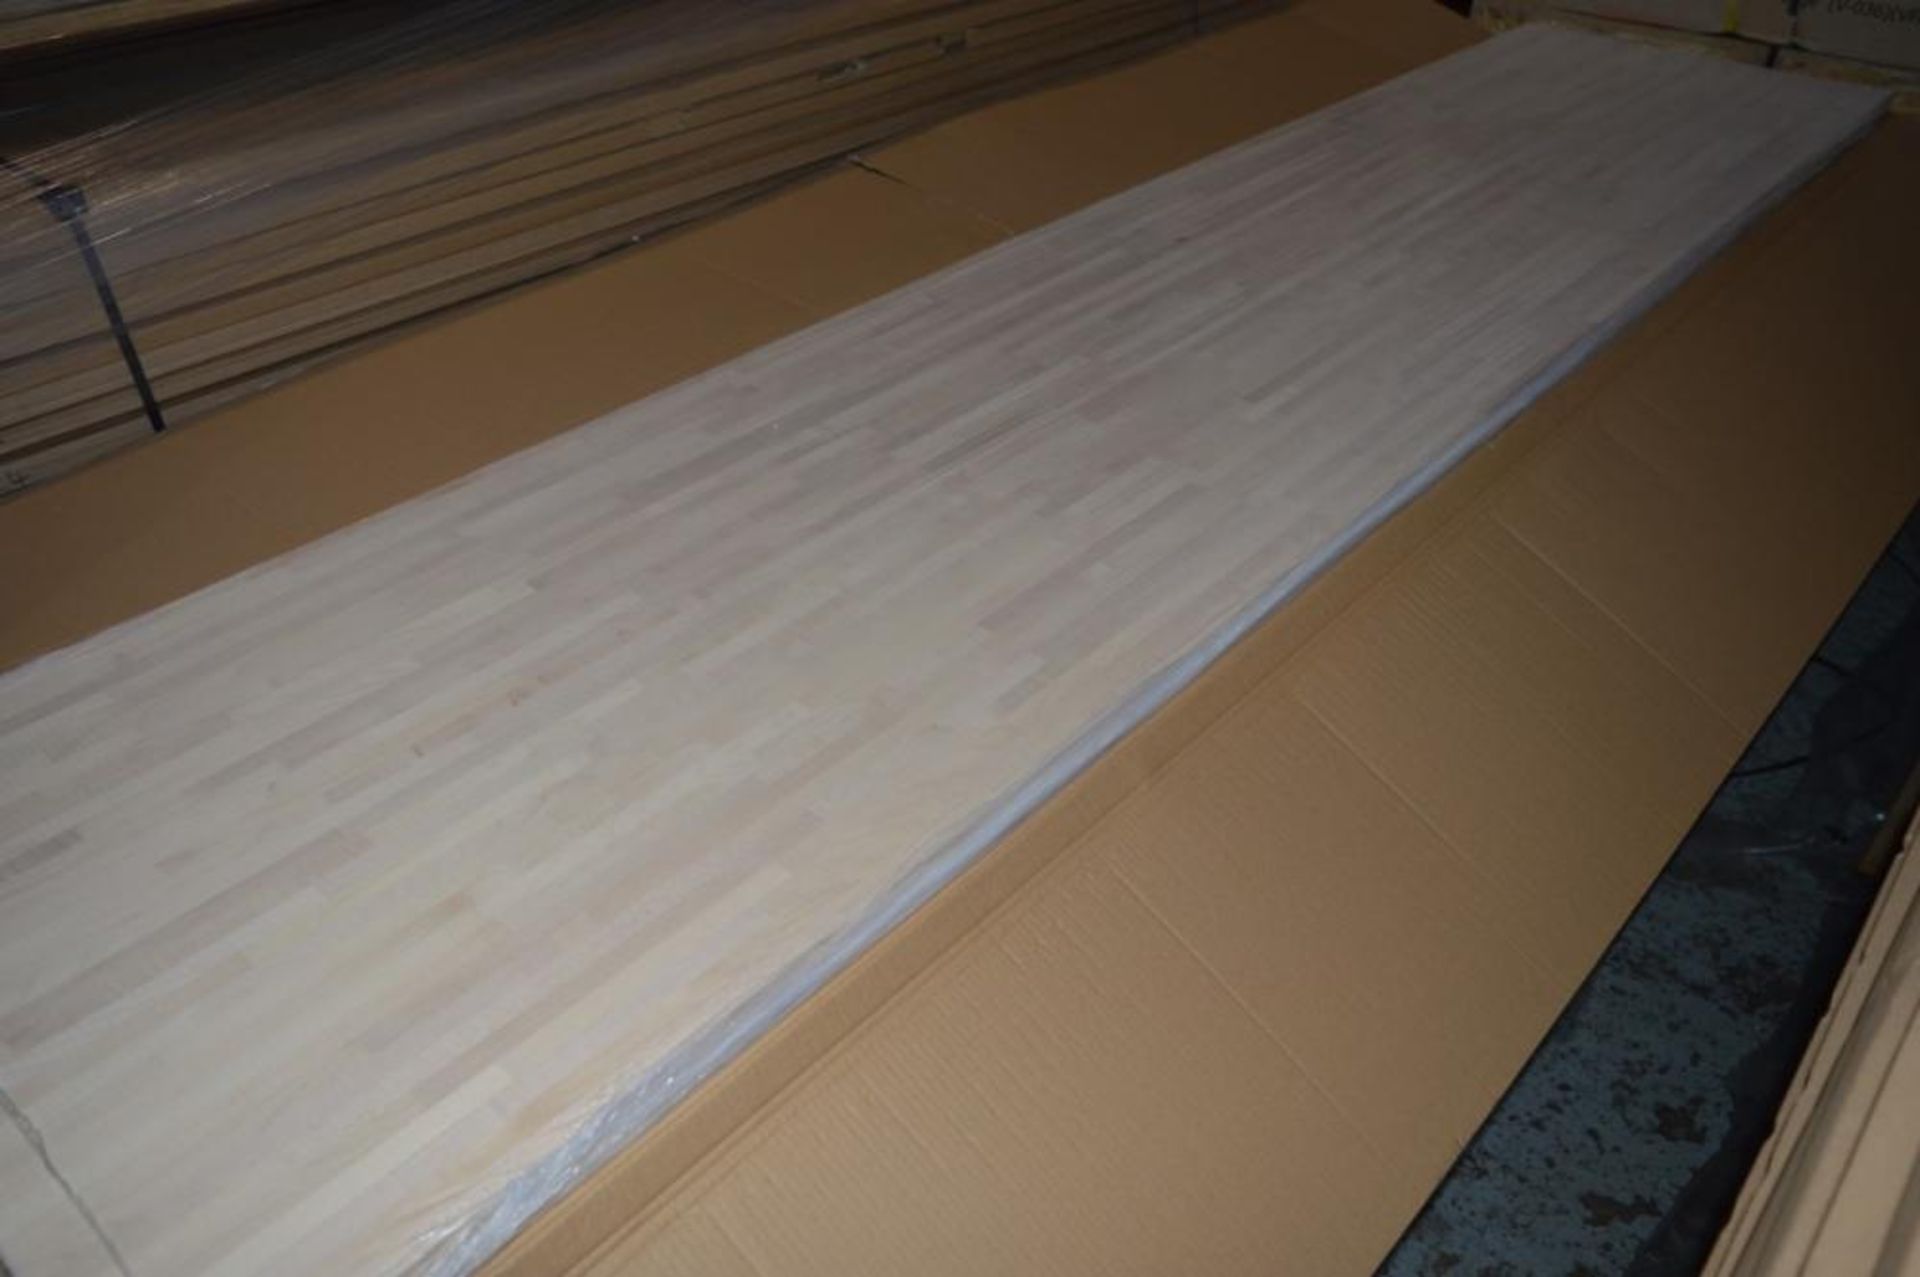 1 x Solid Wood Kitchen Worktop - EUROPEAN MAPLE - Maple Blockwood Kitchen Worktop - Size: 3000 x 900 - Image 3 of 5